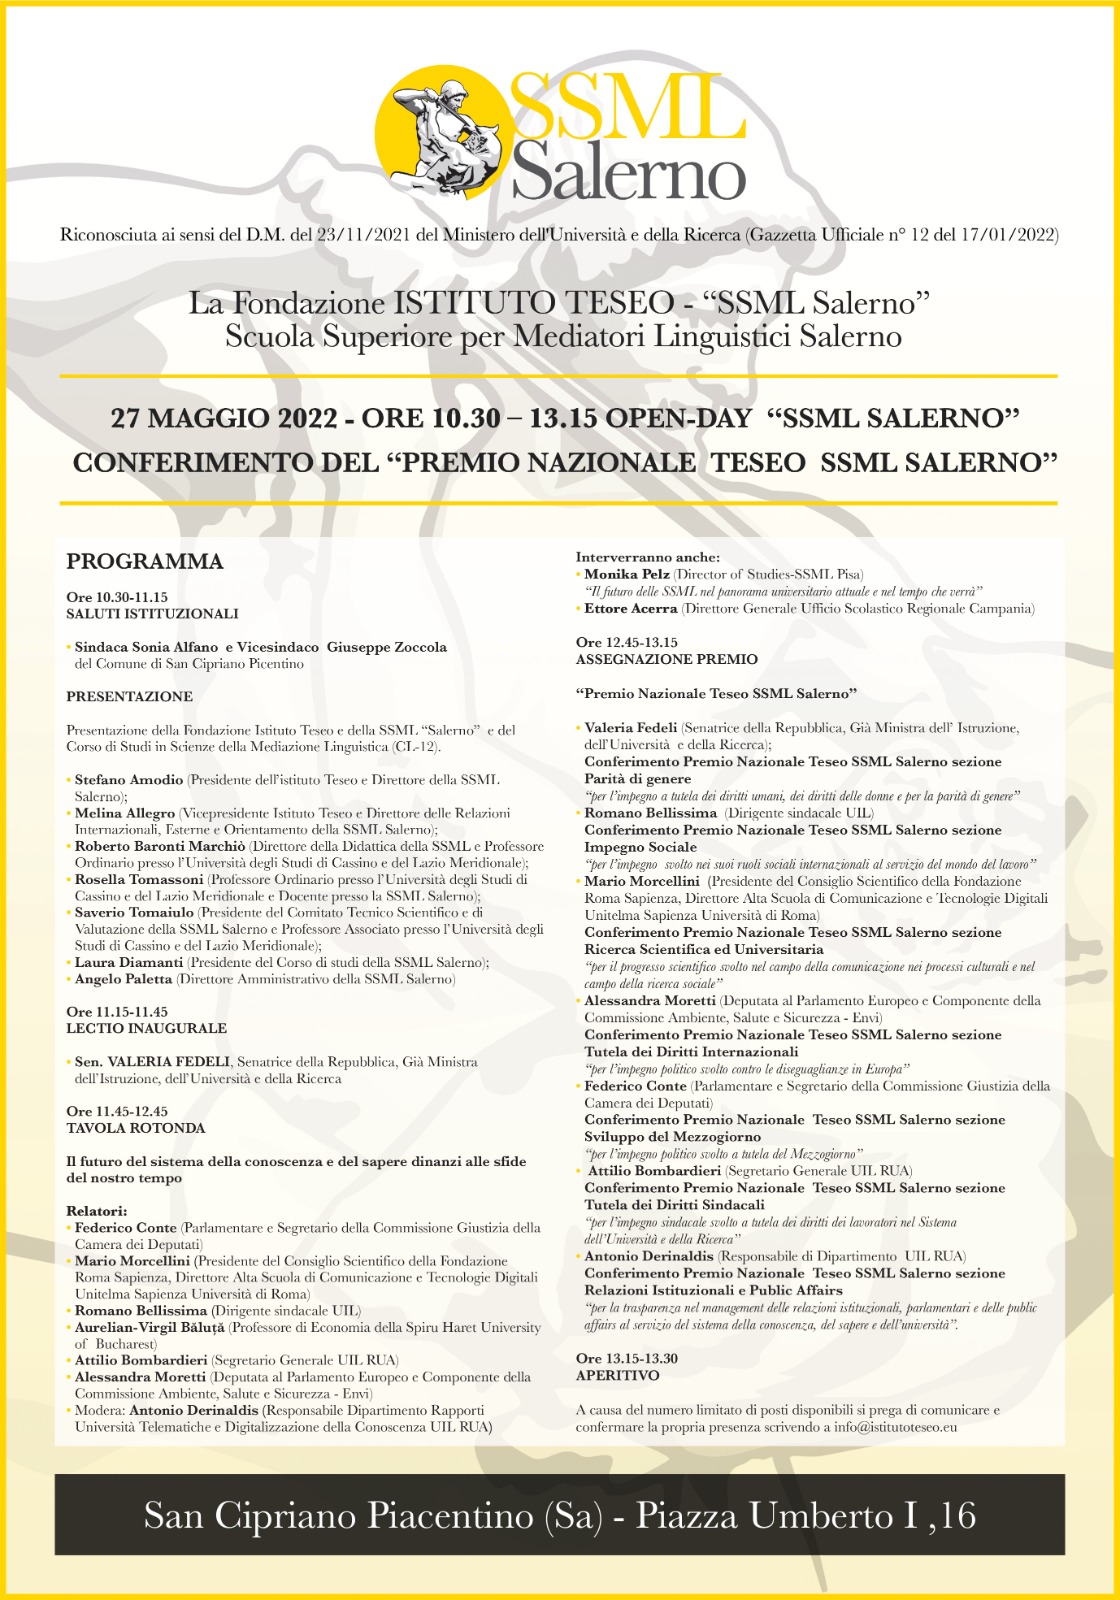 Istituto Teseo, il 27 maggio l’open day e il conferimento dei premi nazionali